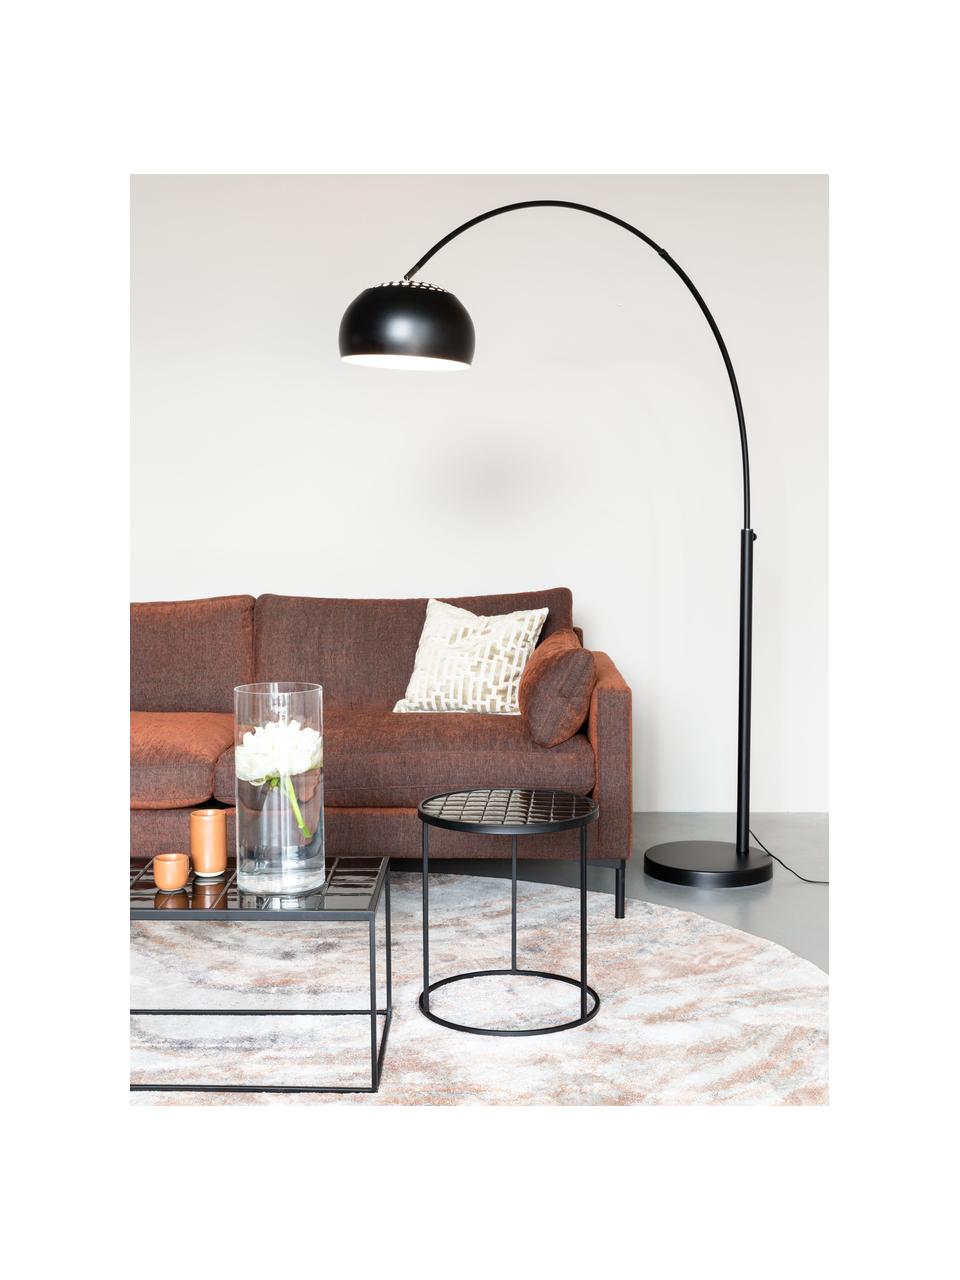 Lampa podłogowa w kształcie łuku Metal Bow, Stelaż: metal, szczotkowany, Czarny, S 170 x W 205 cm